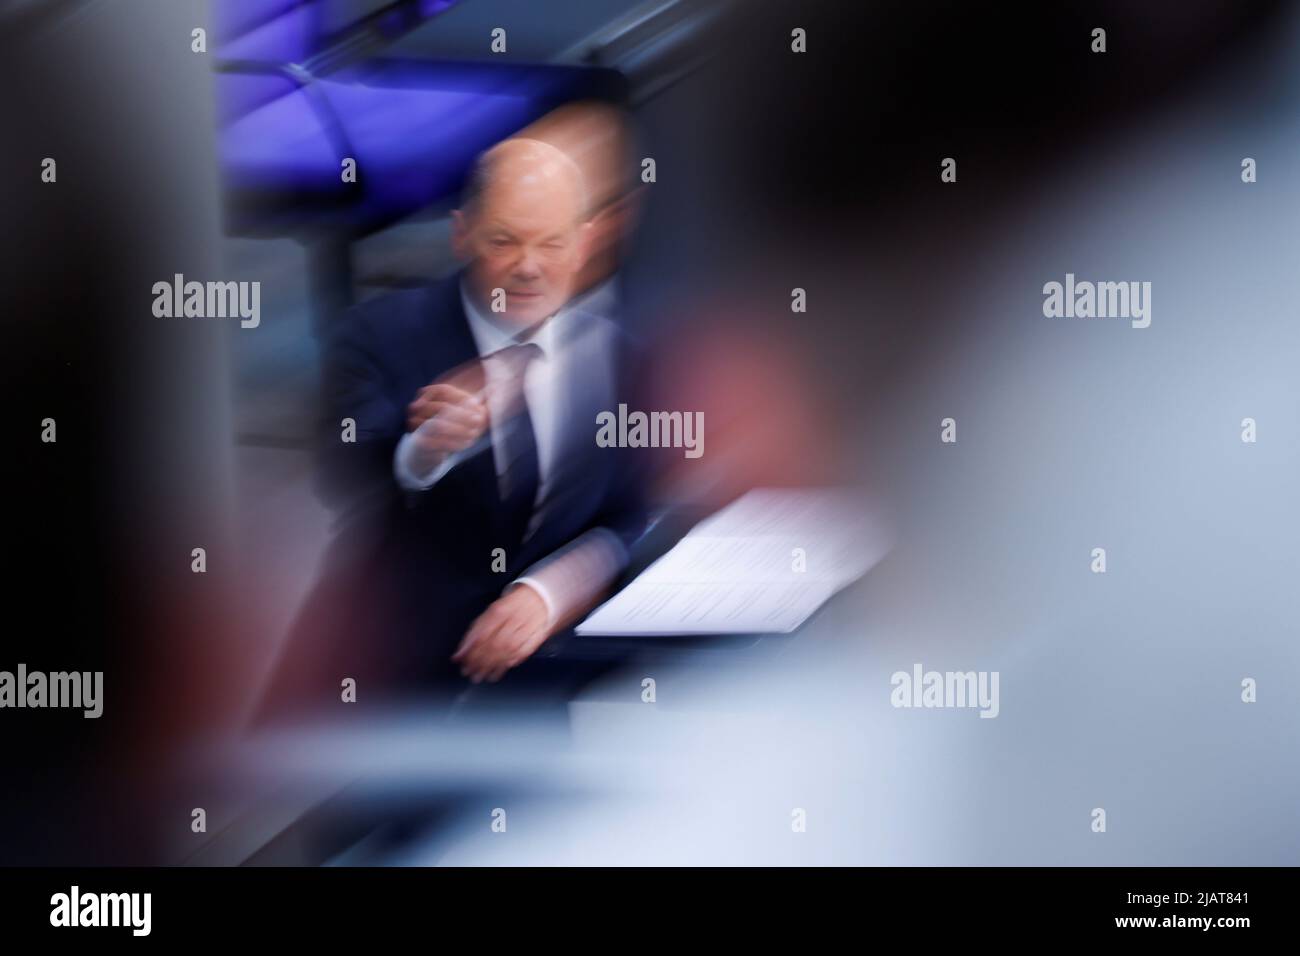 Bundeskanzler Olaf Scholz spricht während einer Sitzung des Bundestages in Berlin am 1. Juni 2022. Aufnahme mit langsamer Verschlusszeit. REUTERS/Hannibal Hanschke Stockfoto